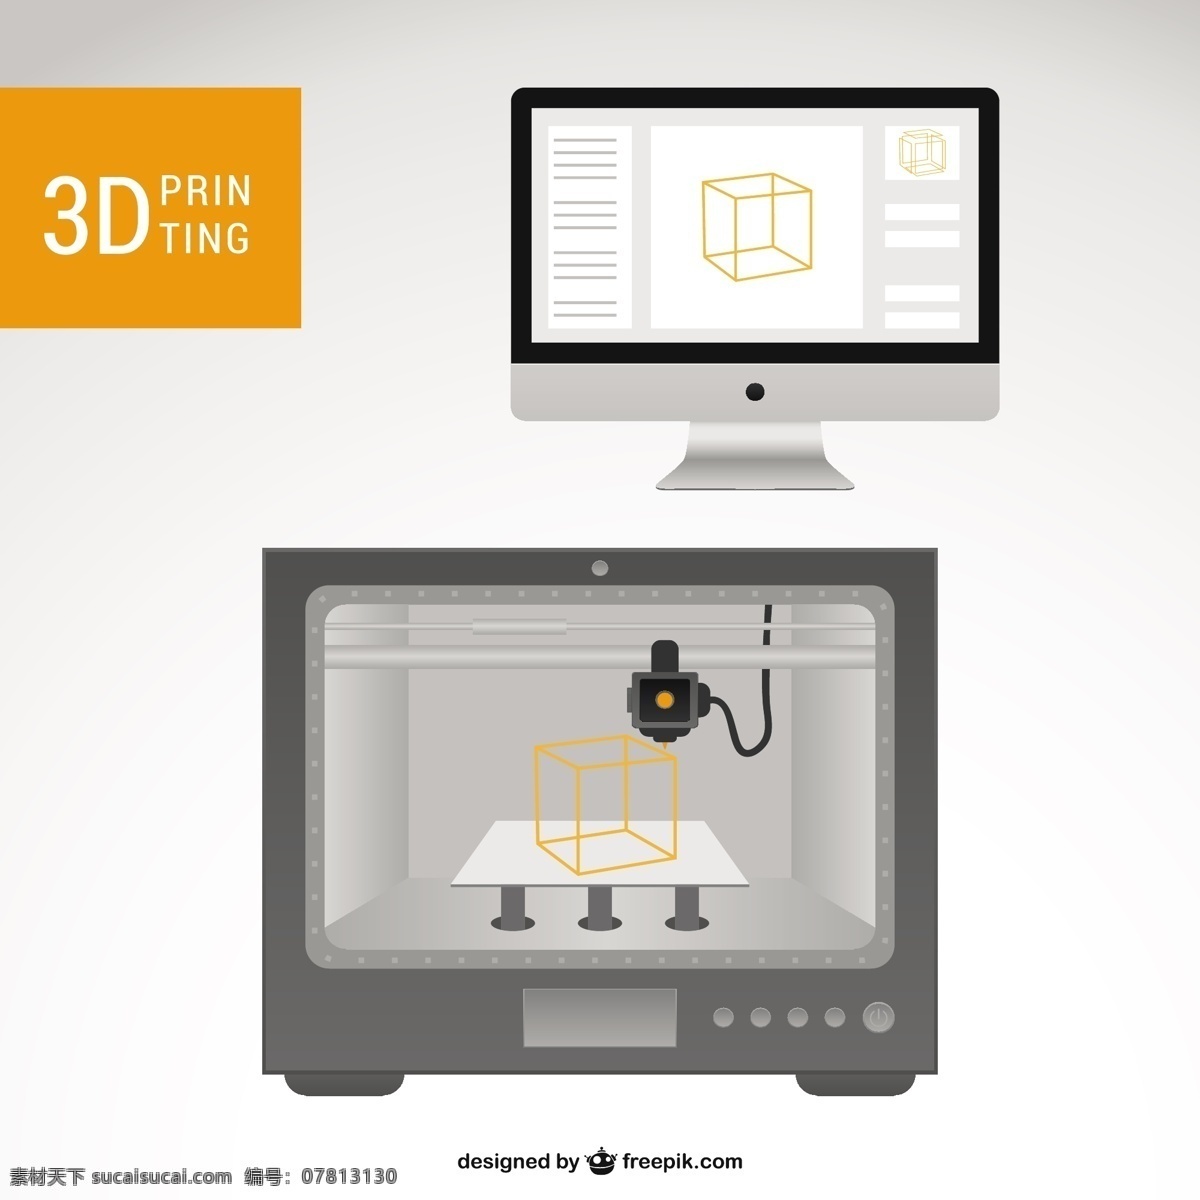 3d 打印机 计算机 技术 模板 图形 三维 布局 平面设计 工程 打印 元素 机器 模型 插图 设计元素 电子 印刷 图像 白色